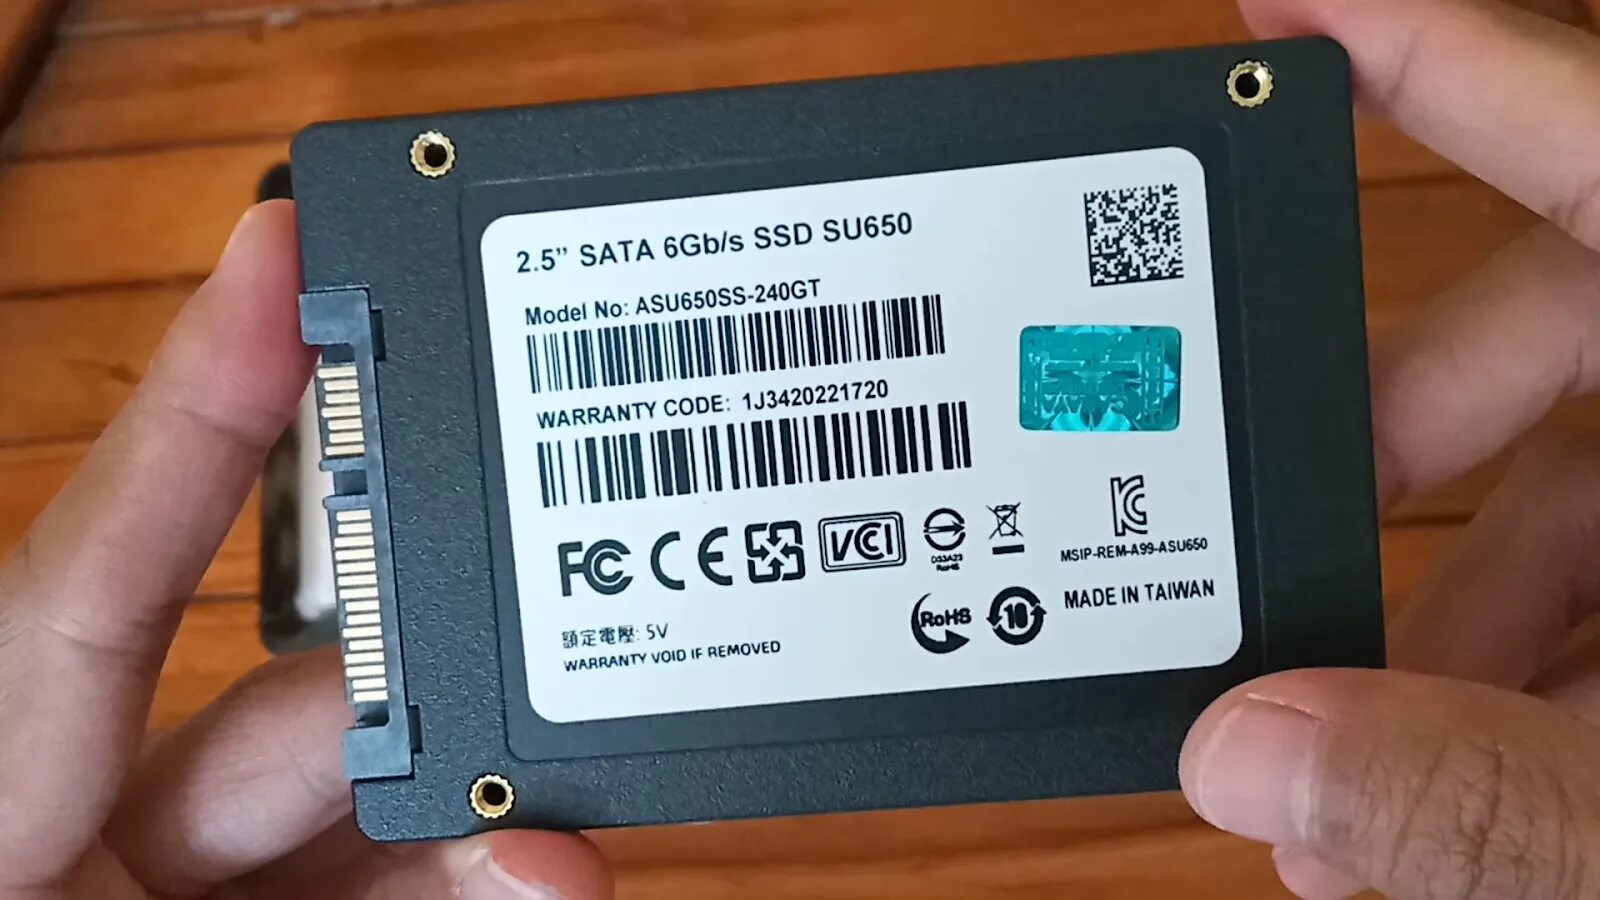 SSD su650 512. SSD su650 характеристики. Накопитель SSD A-data su650 512gb (asu650ss-512gt-r).